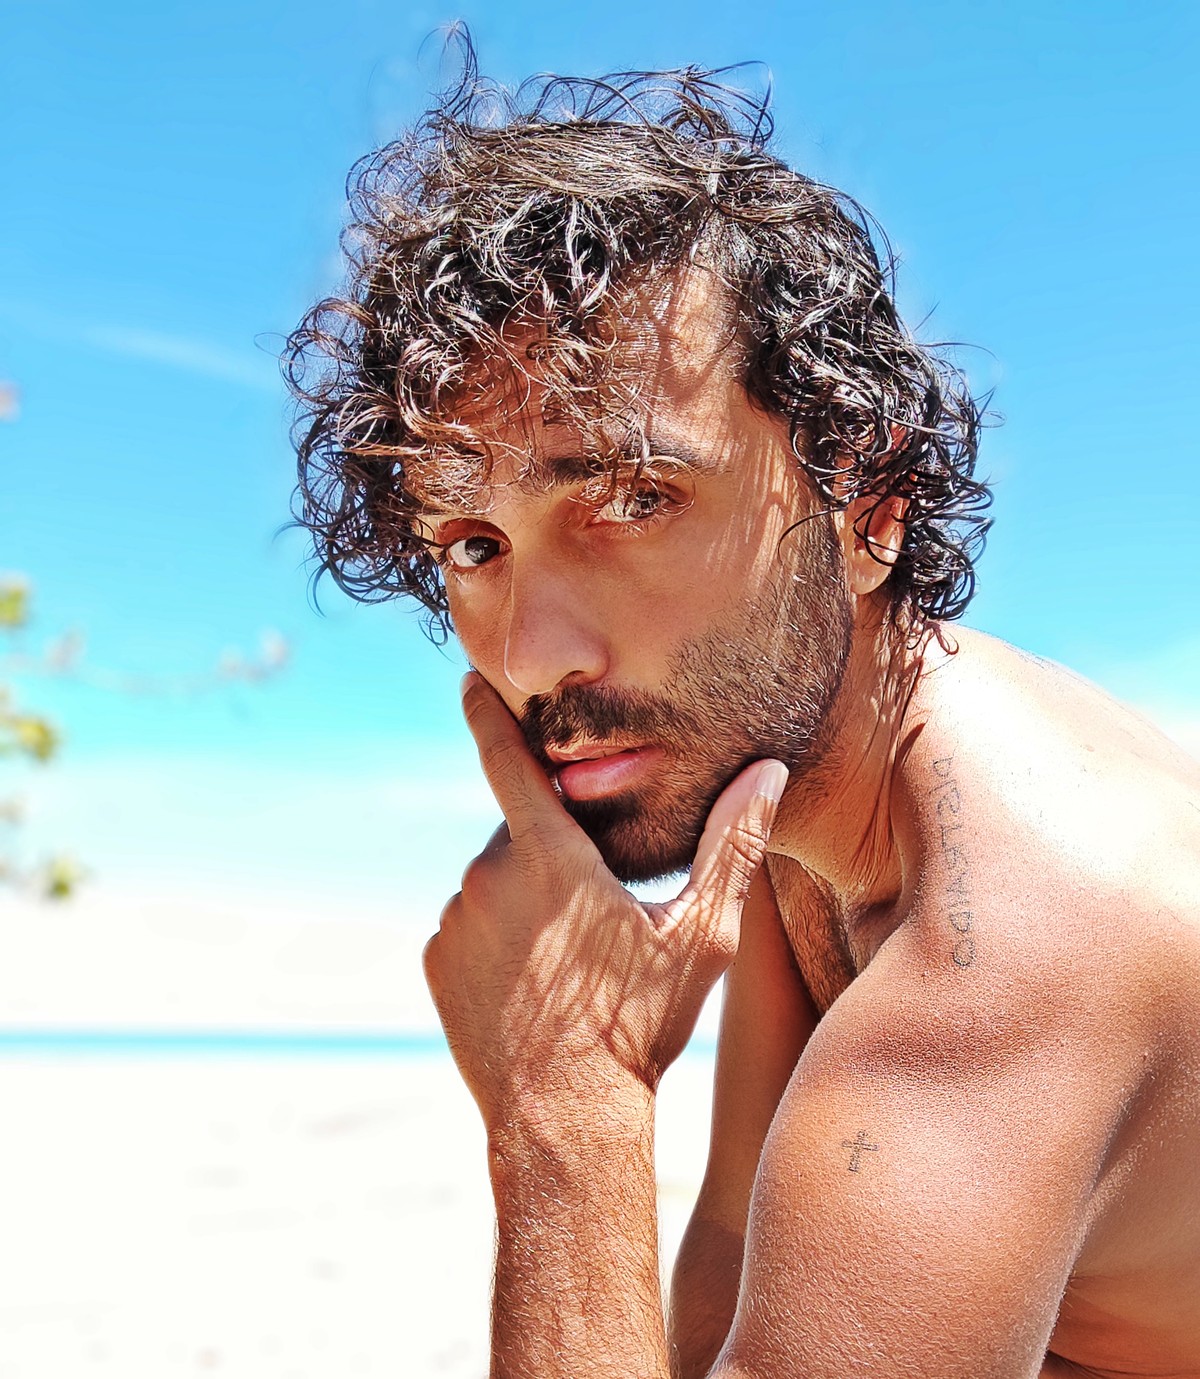 Rico Ayade encara ‘O leãozinho’ com olhar gay em EP em que canta Caetano Veloso | Blog do Mauro Ferreira